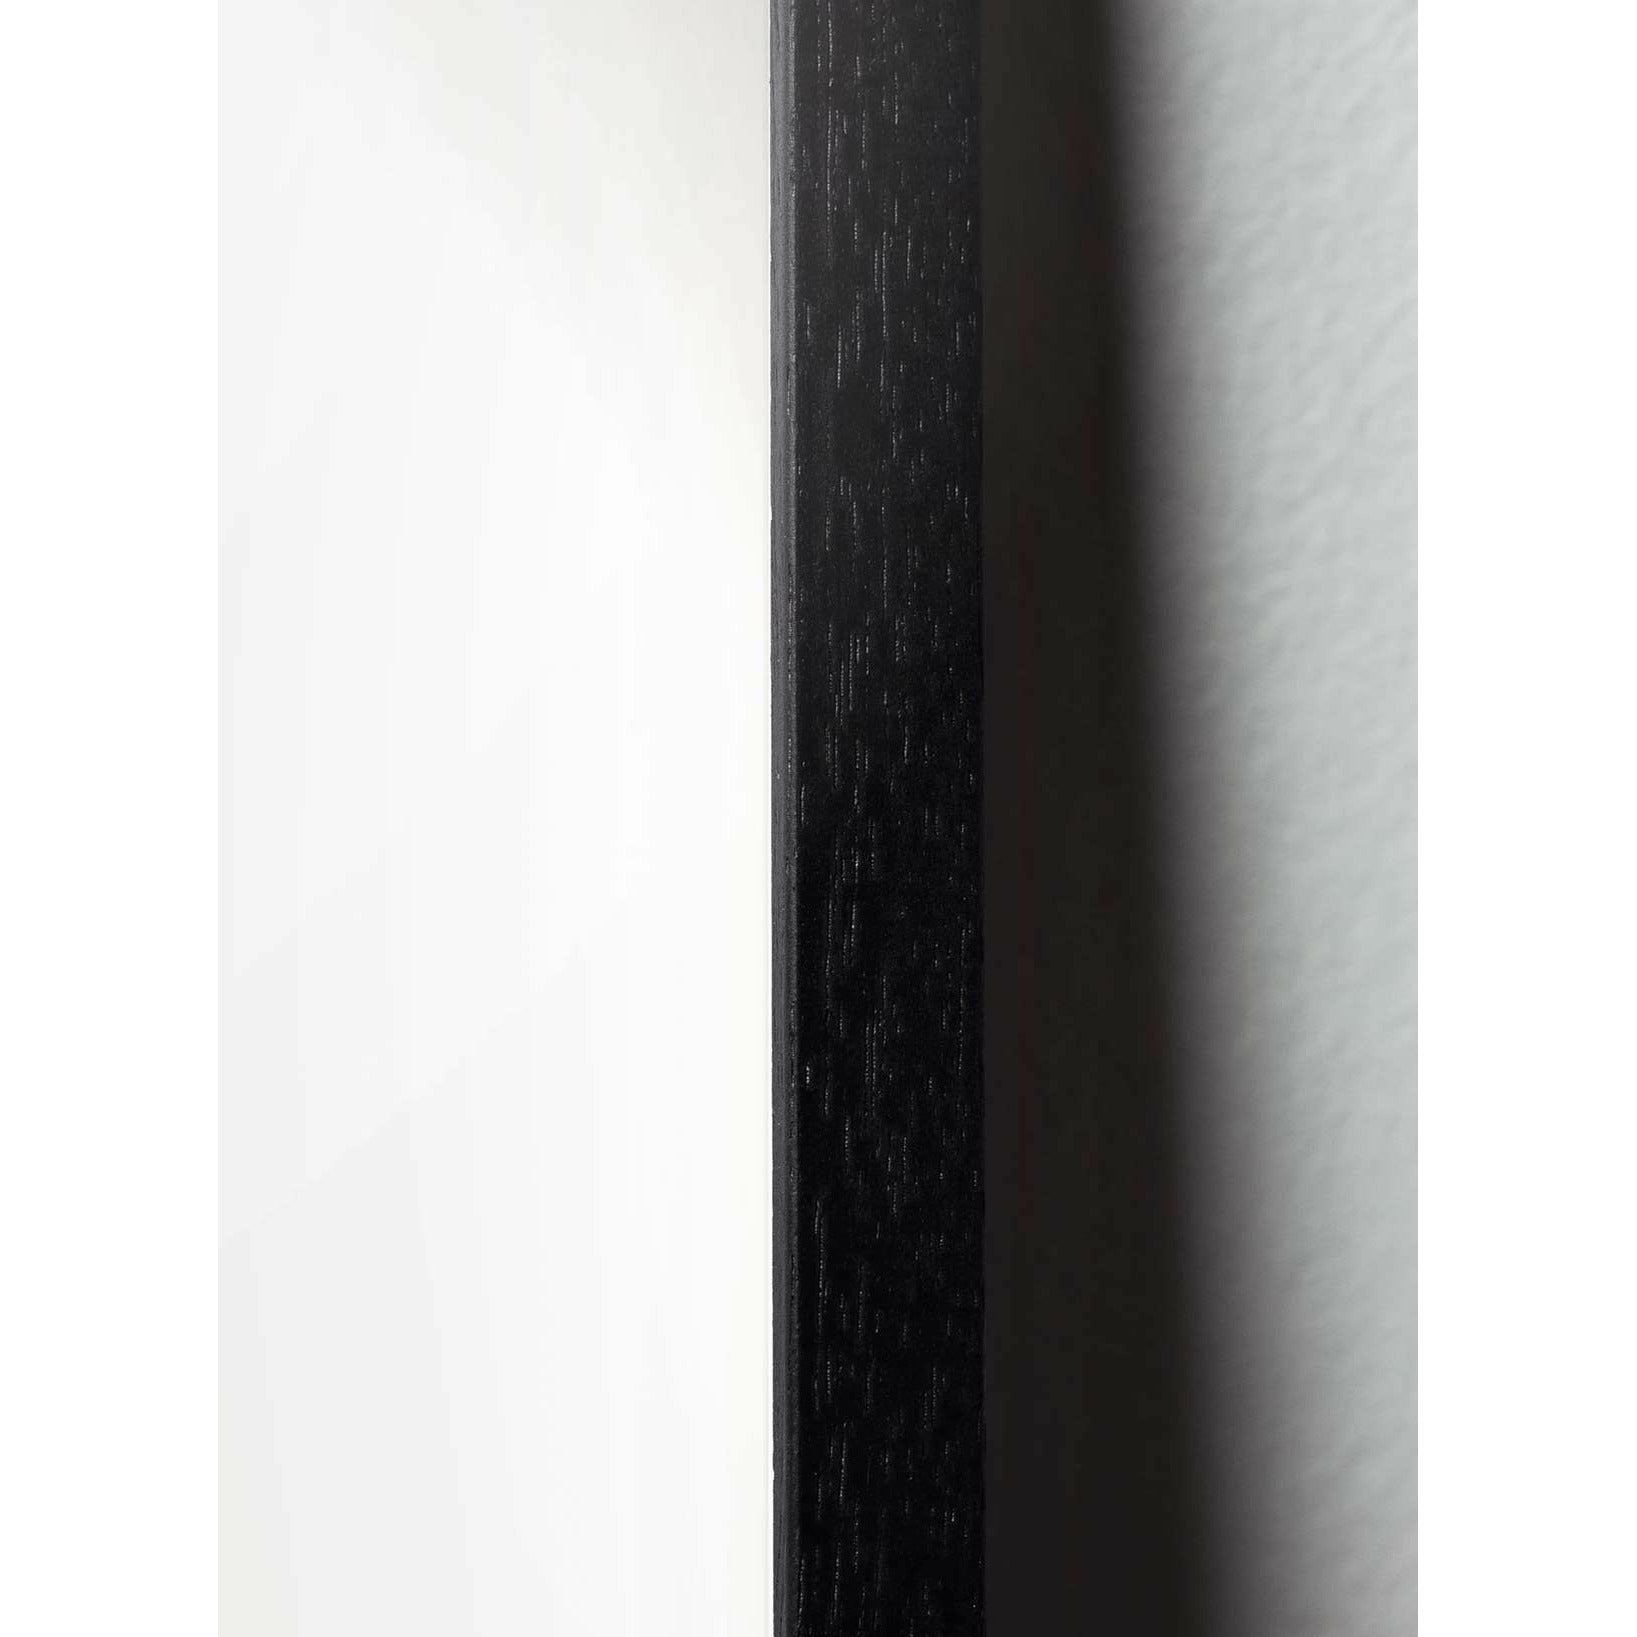 Póster clásico de BrainChild Teddy Bear, marco en madera lacada negra A5, fondo de color arena